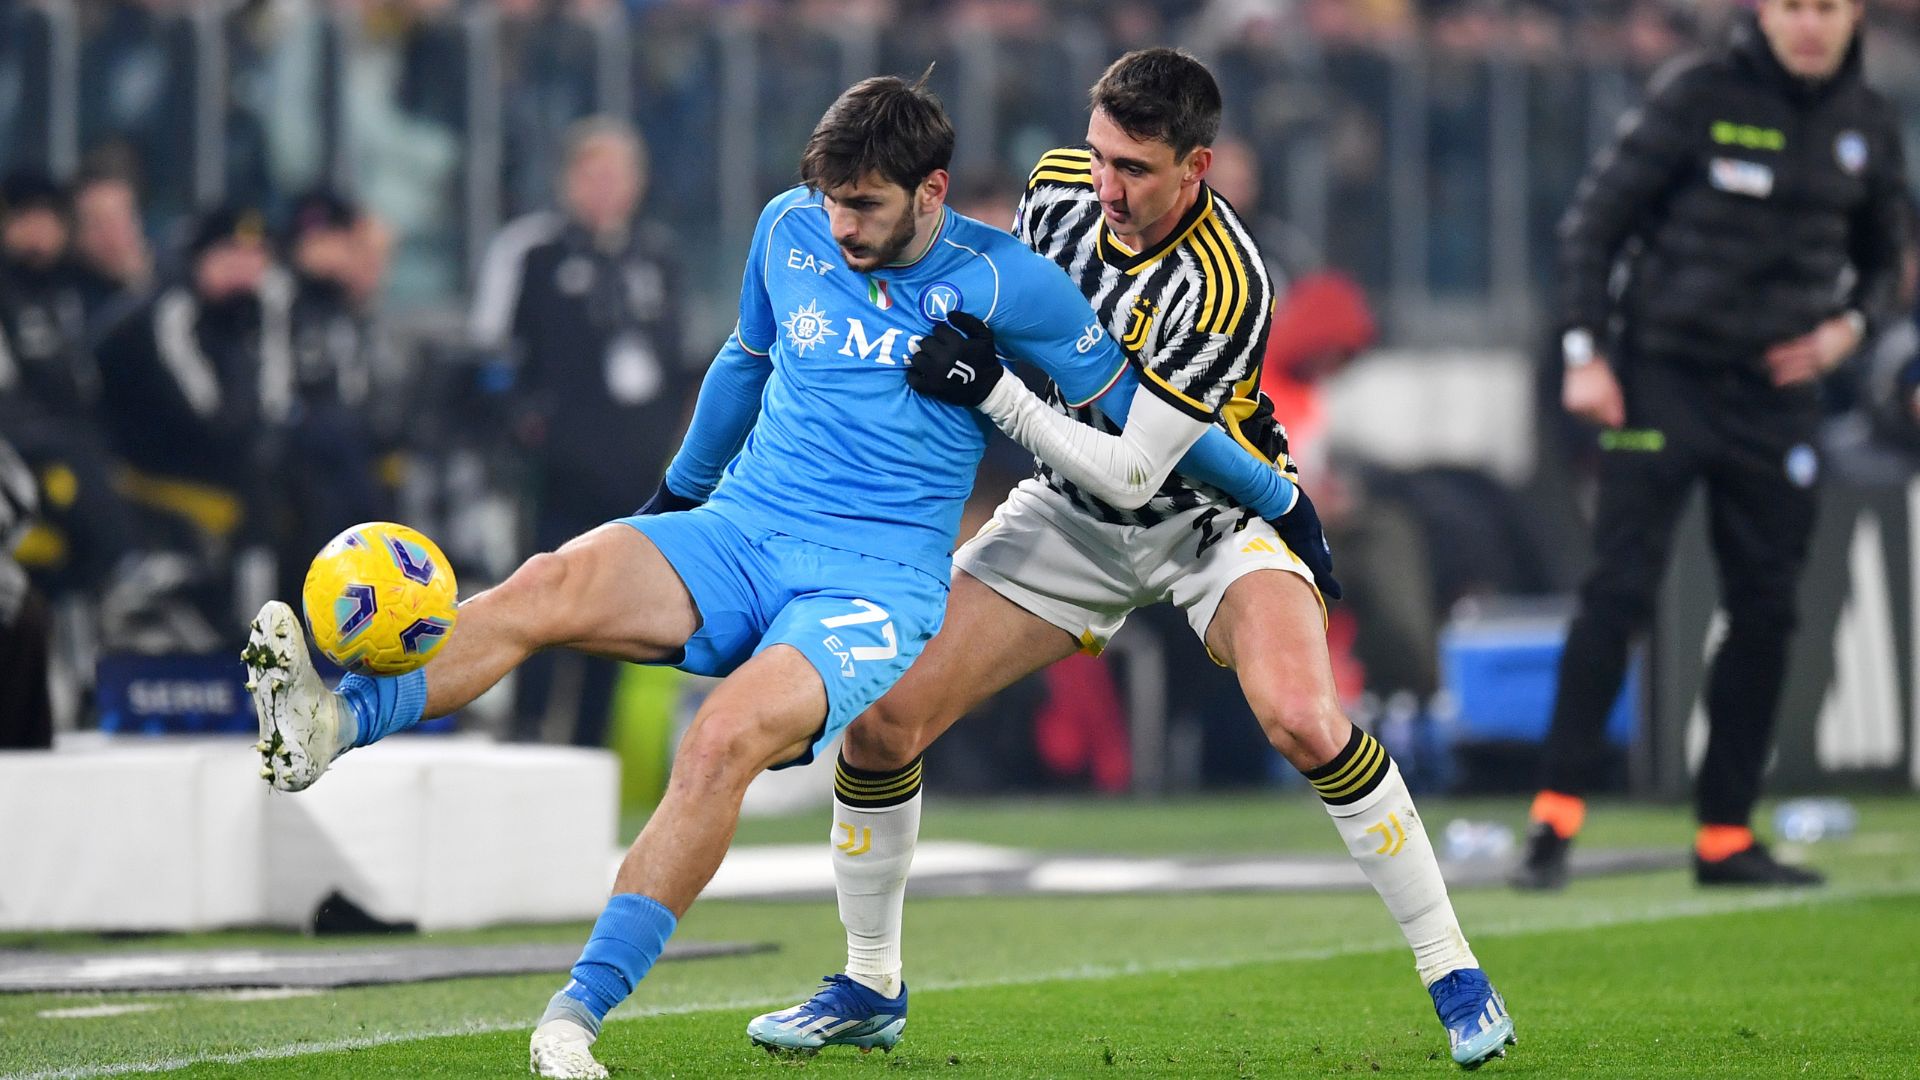 Com a vitória, a Juventus se isolou na liderança parcial, com 36 pontos